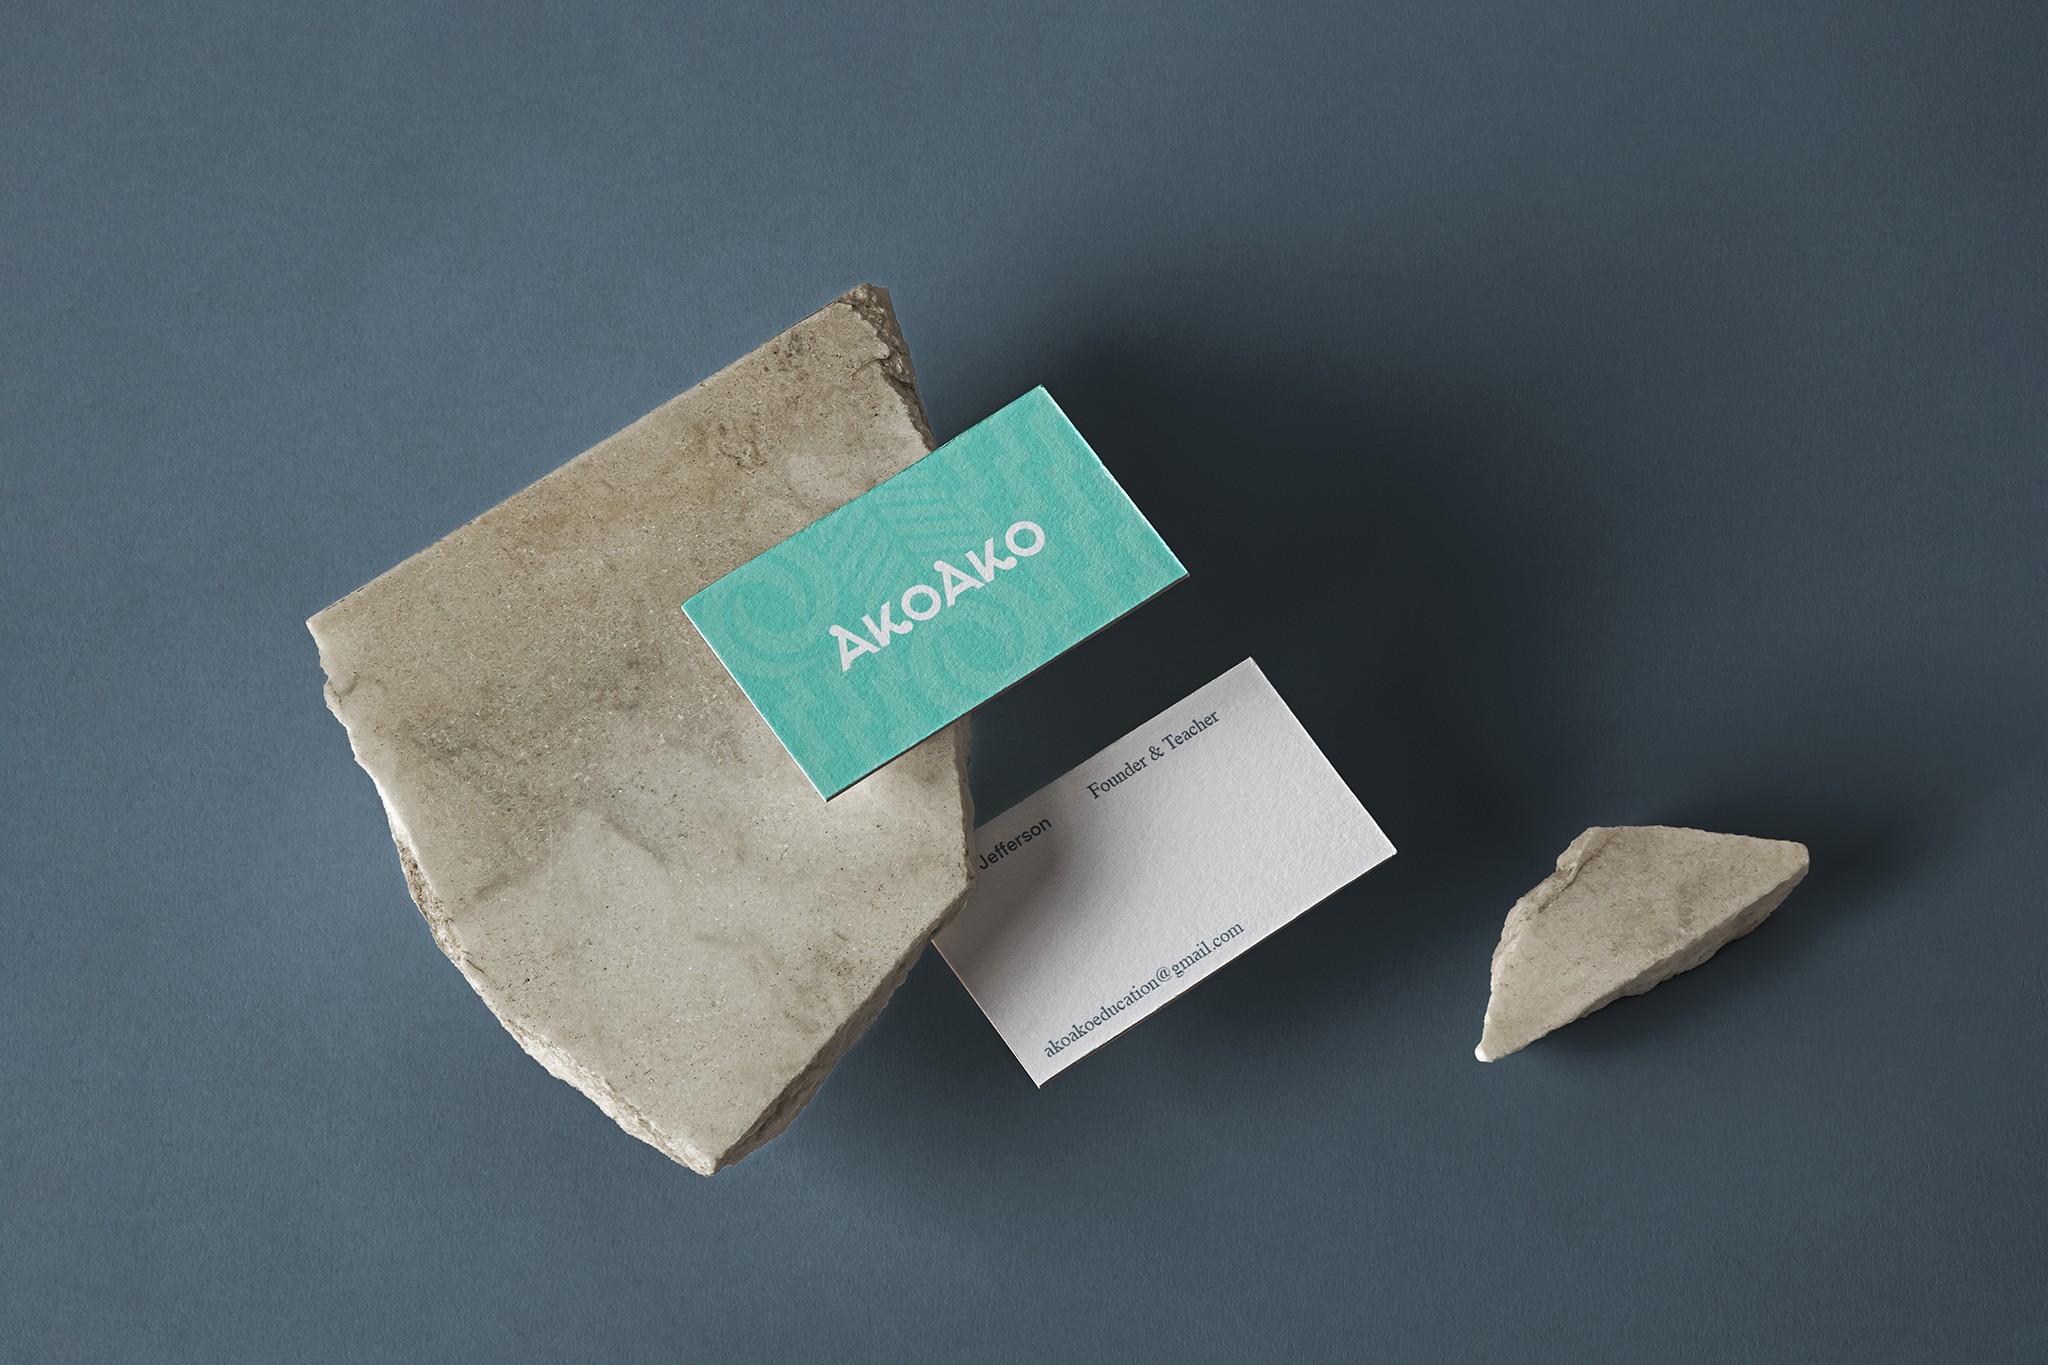 Das Bild zeigt zwei Visitenkarten mit einem Maori-Muster auf einem Felsen, designed für das Unternehmen Akoako